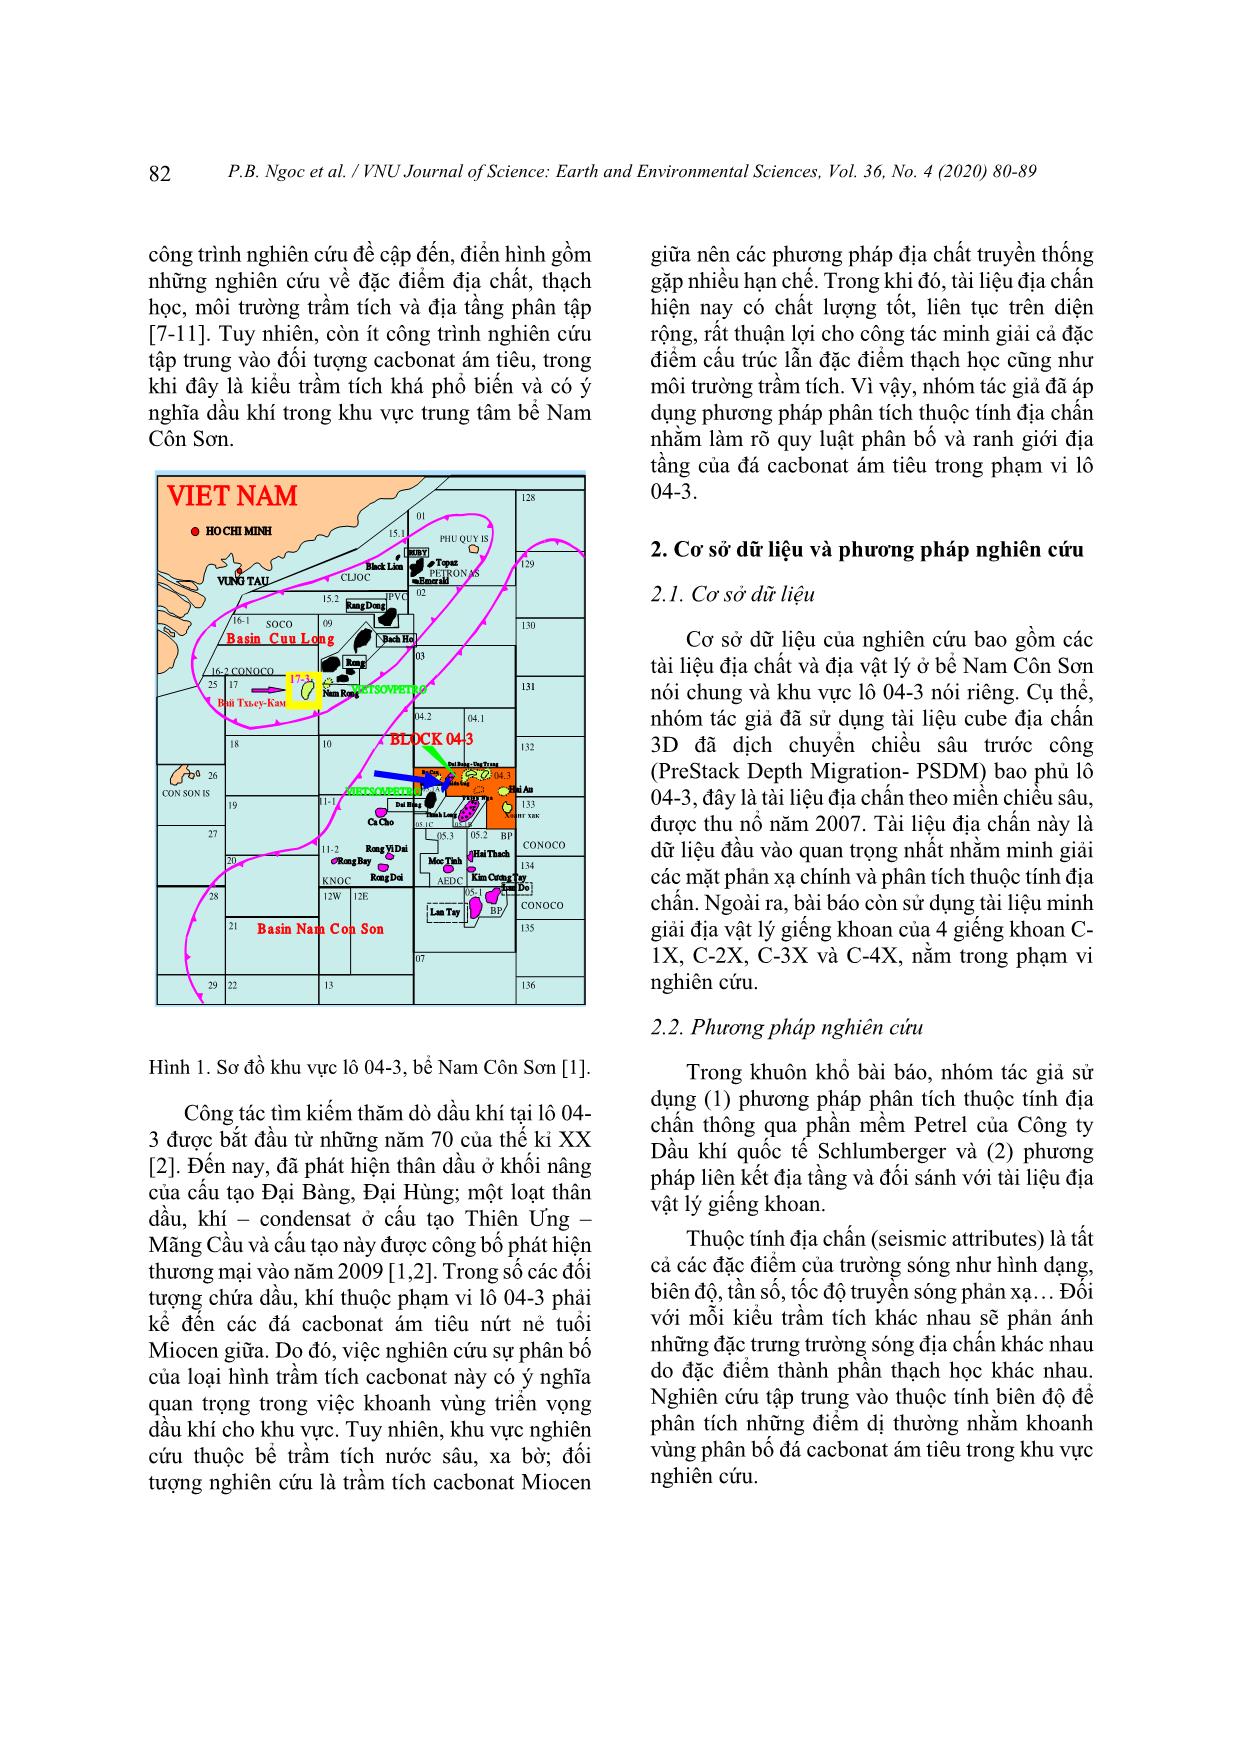 Đặc điểm phân bố trầm tích cacbonat ám tiêu Miocen giữa, Lô 04-3, bể Nam Côn Sơn trên cơ sở phân tích thuộc tính địa chấn trang 3